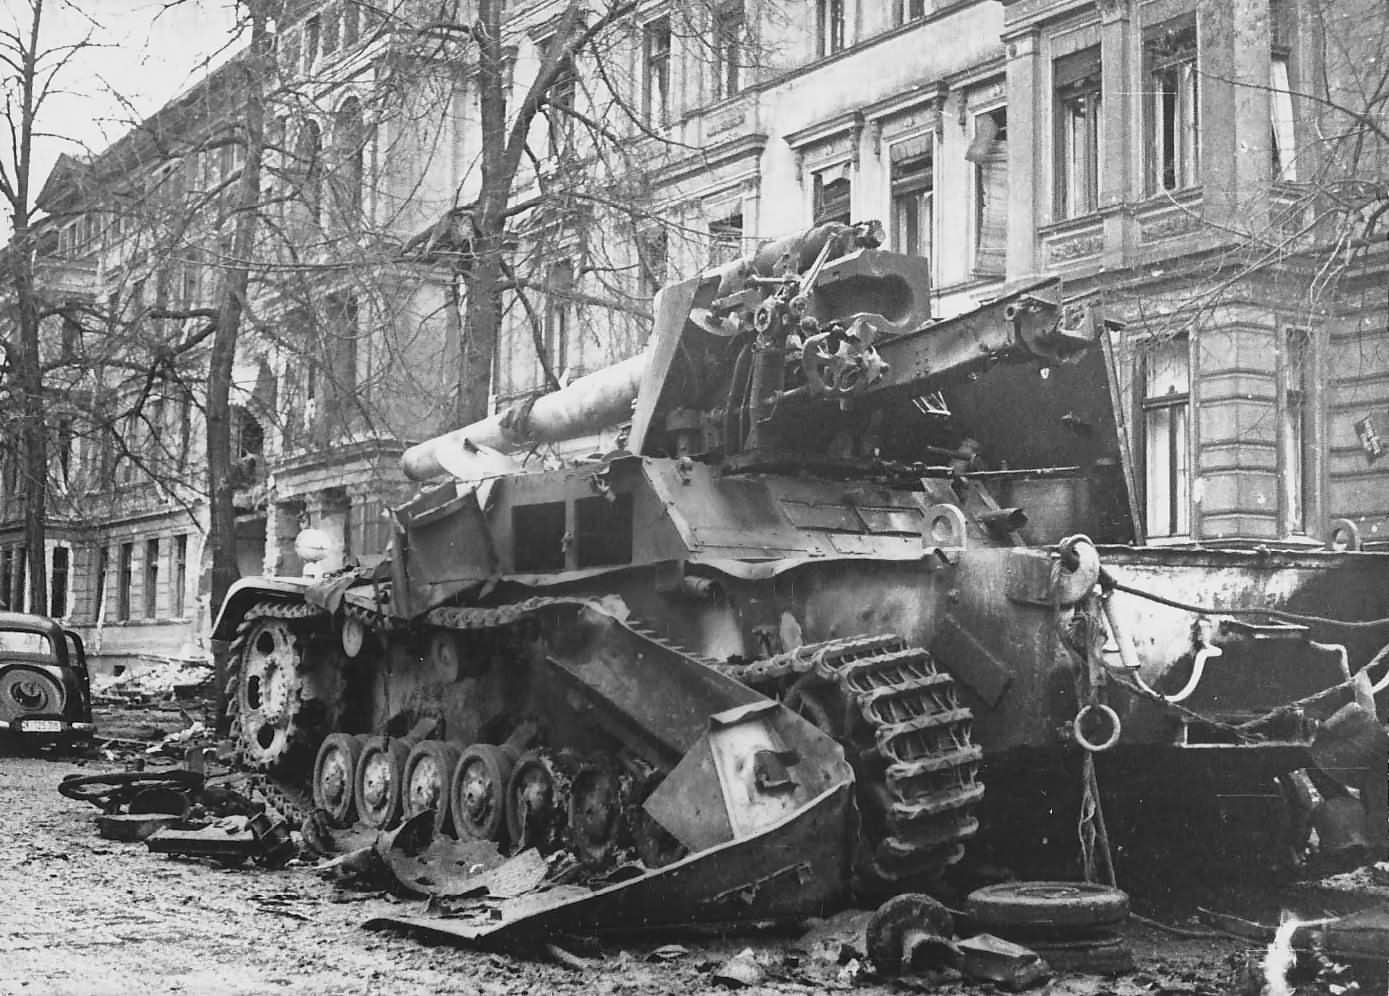 Hummel howitzer in Berlin 1945